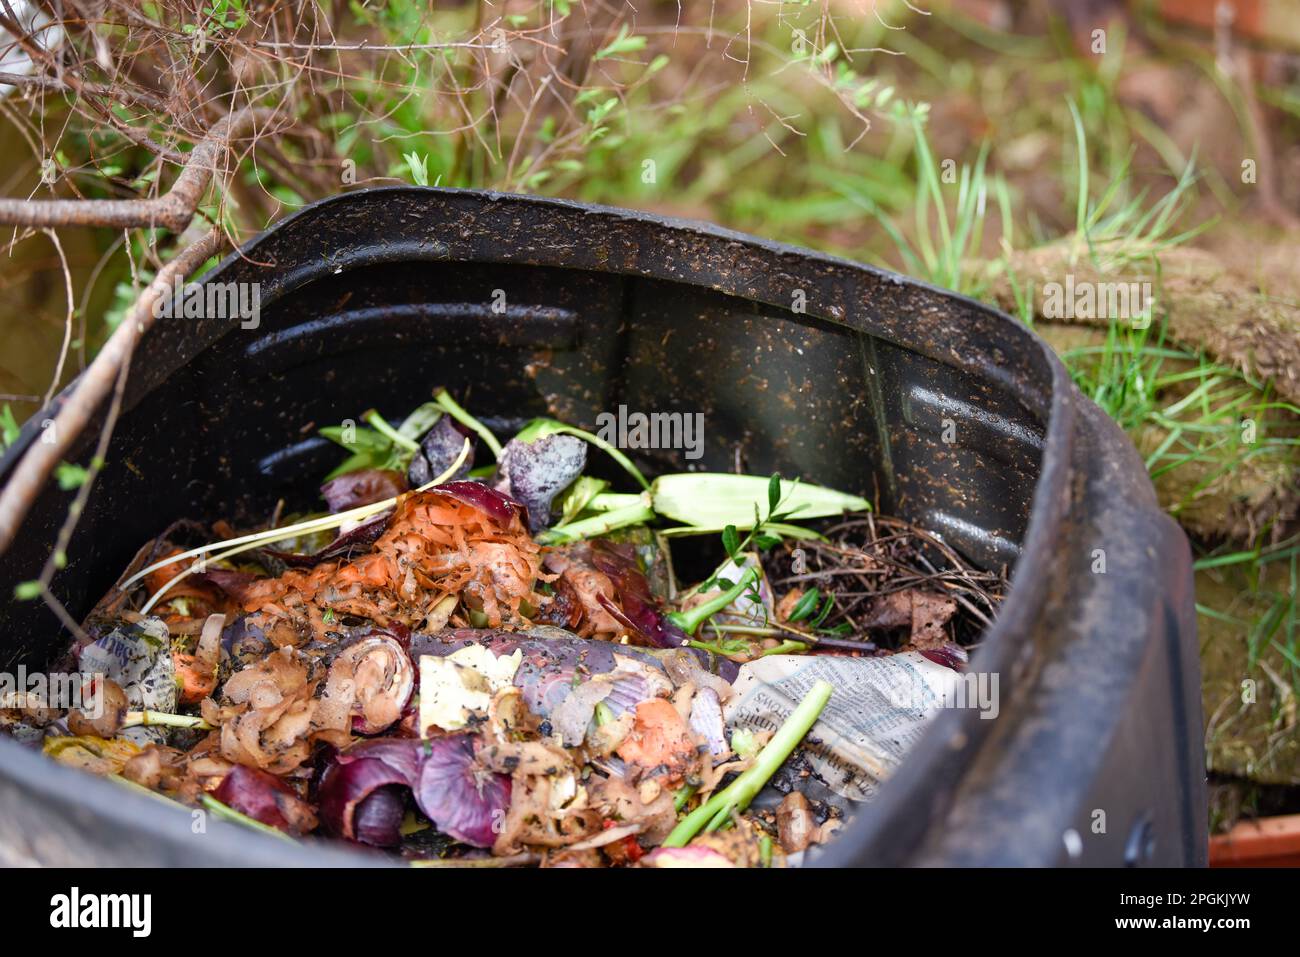 Bac de recyclage des aliments pour fabriquer du compost à partir des déchets alimentaires ménagers de manière durable Banque D'Images